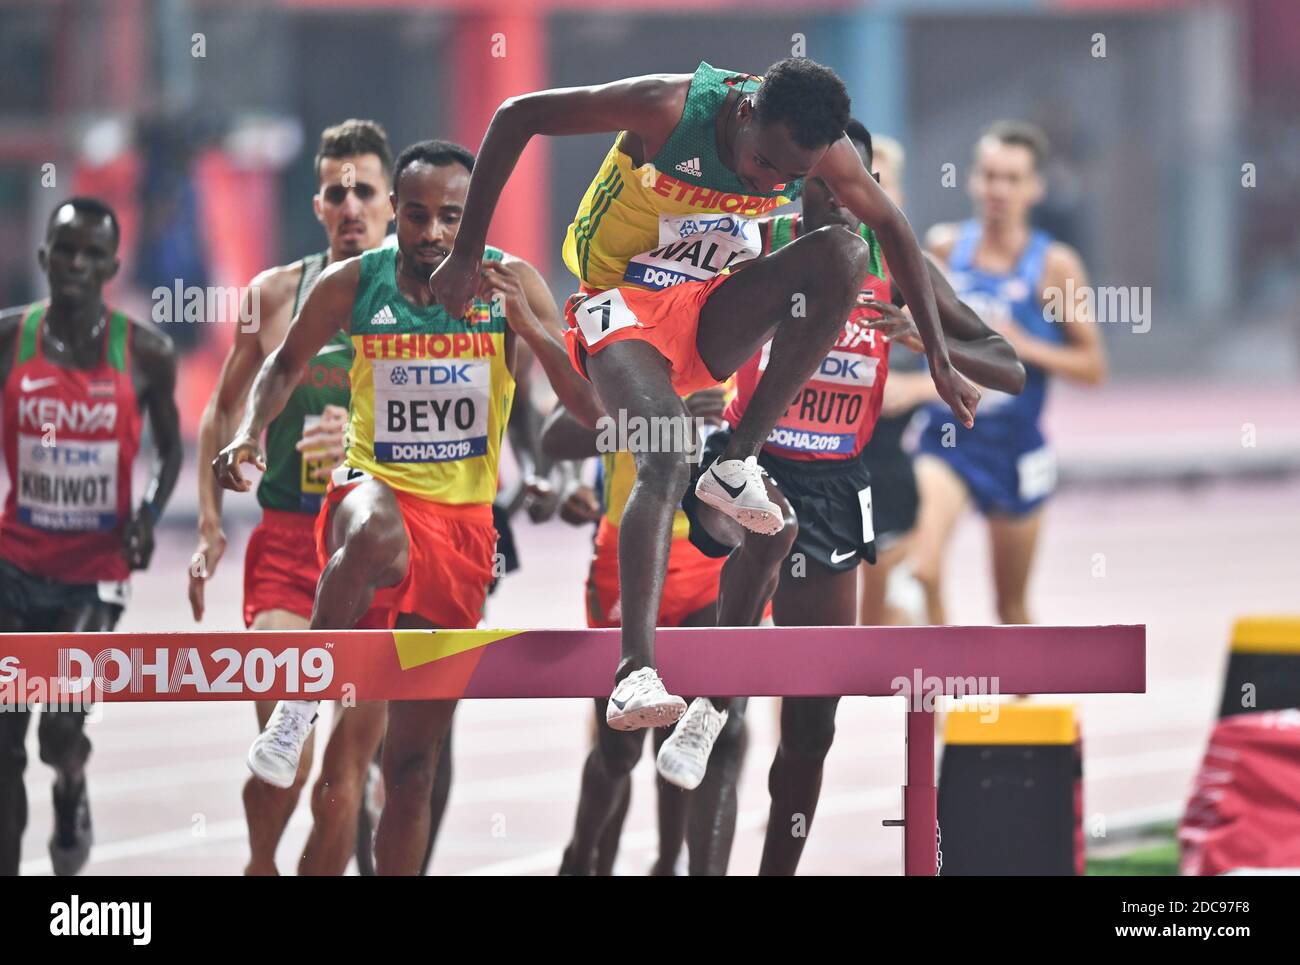 Getnet Wale (Ethiopia).3000 Metres Steeplechase final. IAAF World Athletics Championships, Doha 2019 Stock Photo